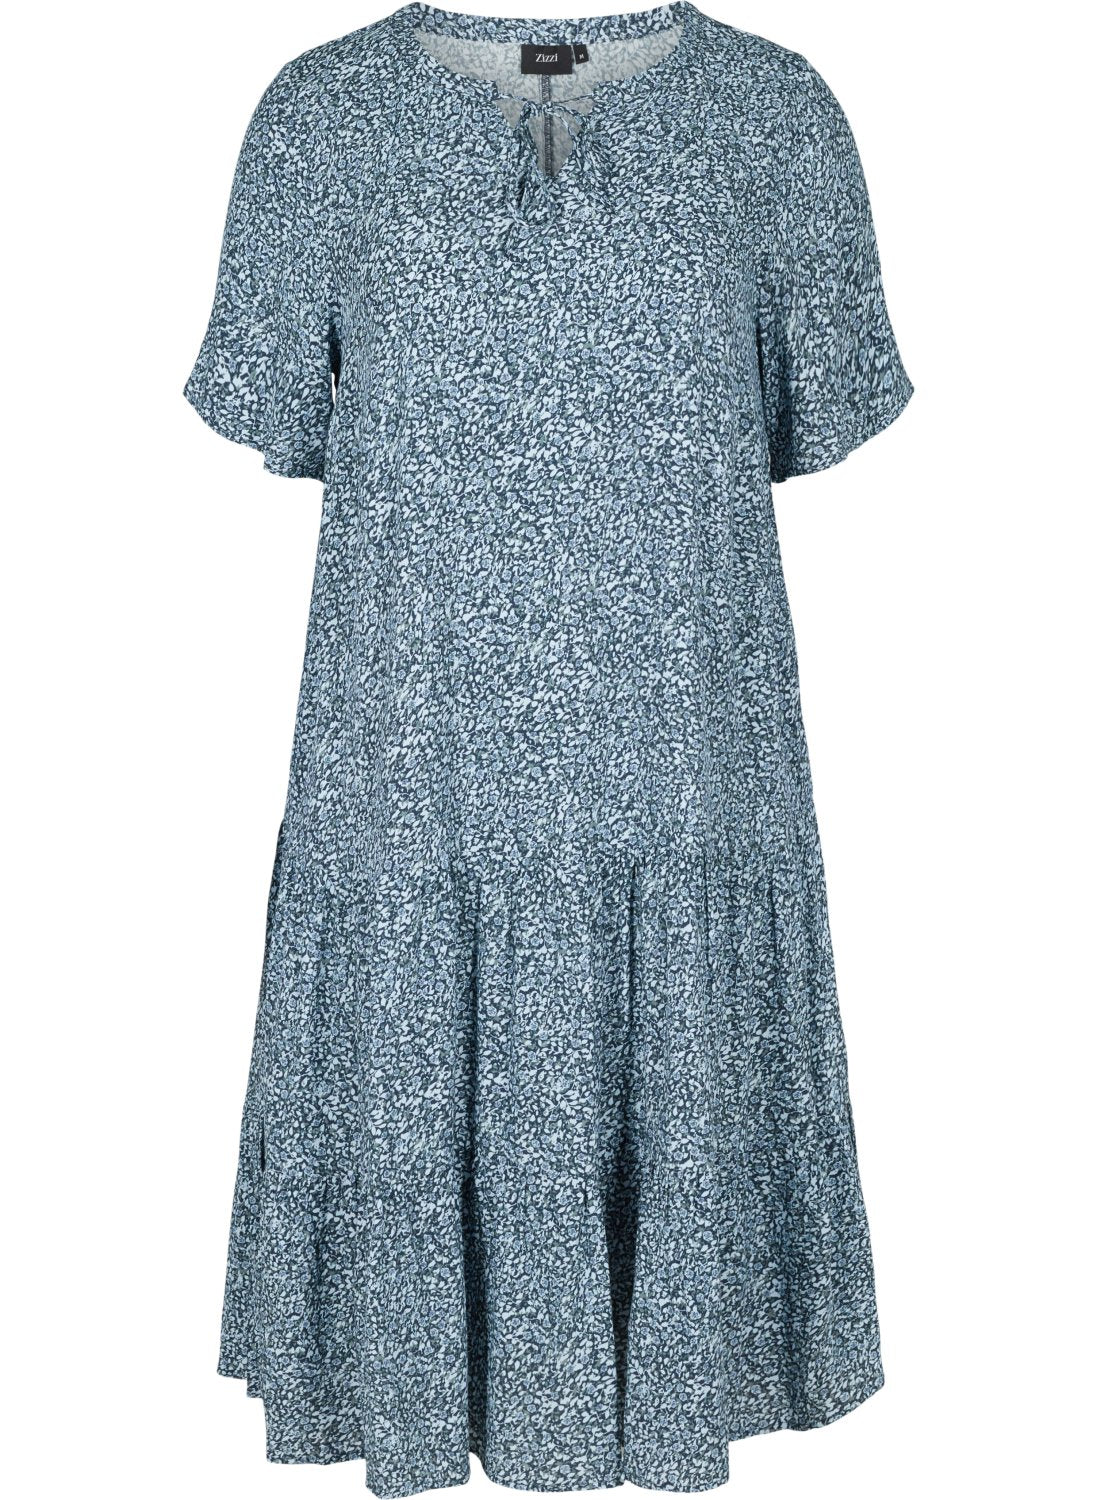 Bella Blue floral Dress